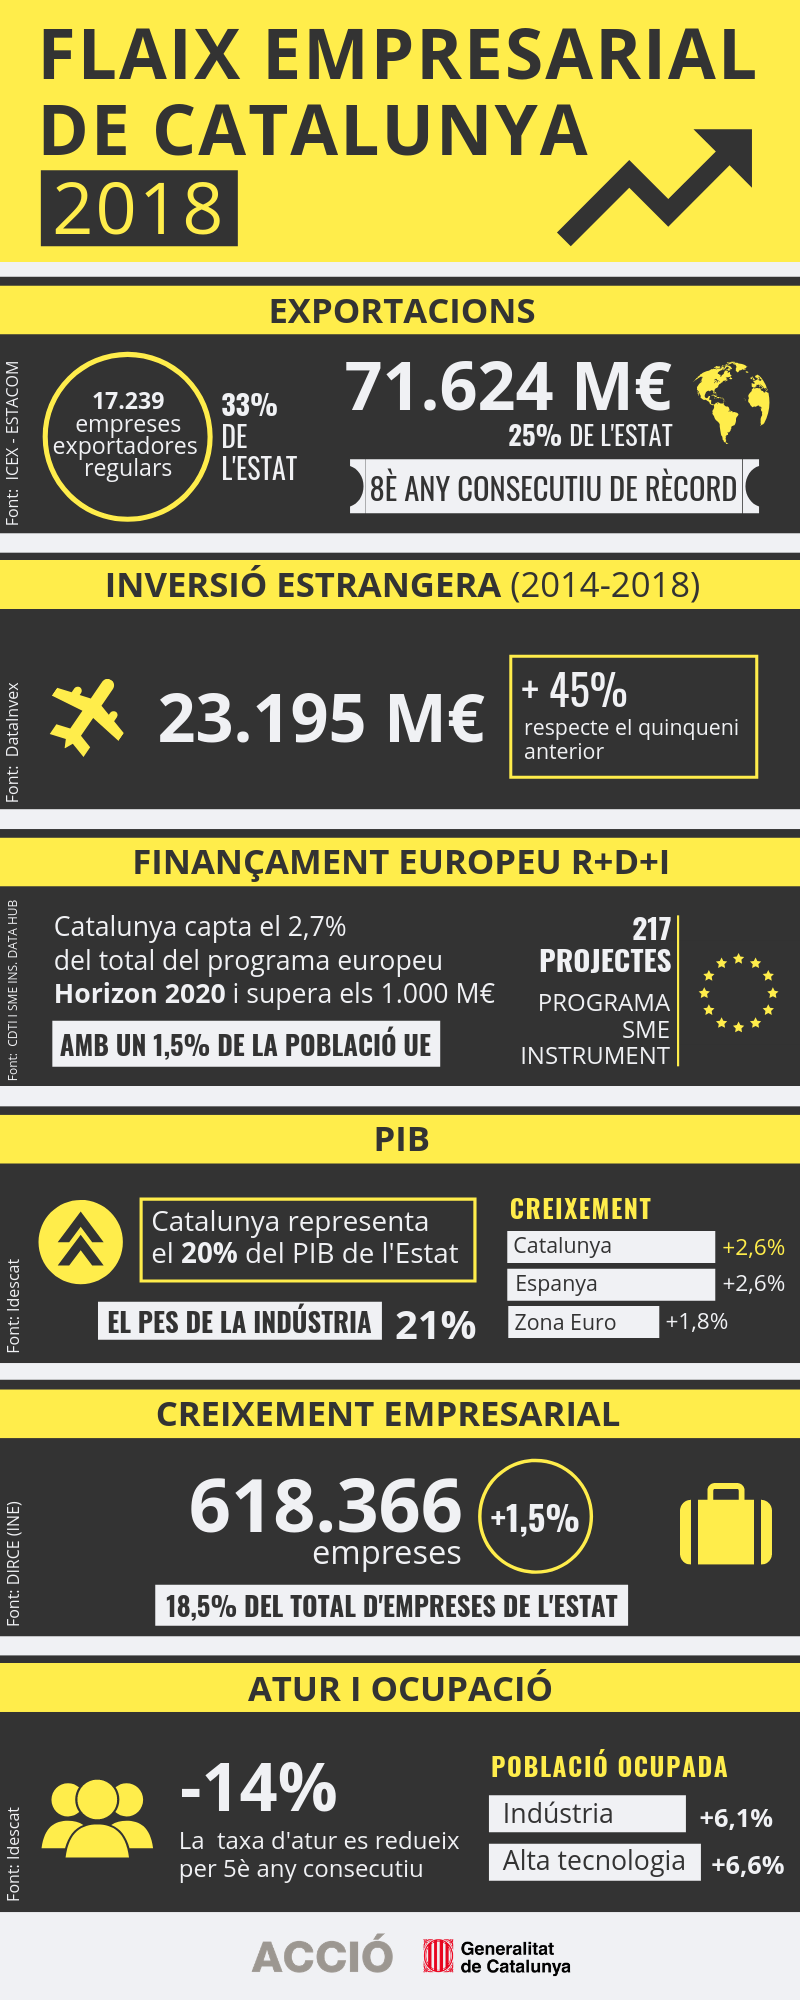 Infografia de flaix empresarial de Catalunya 2018